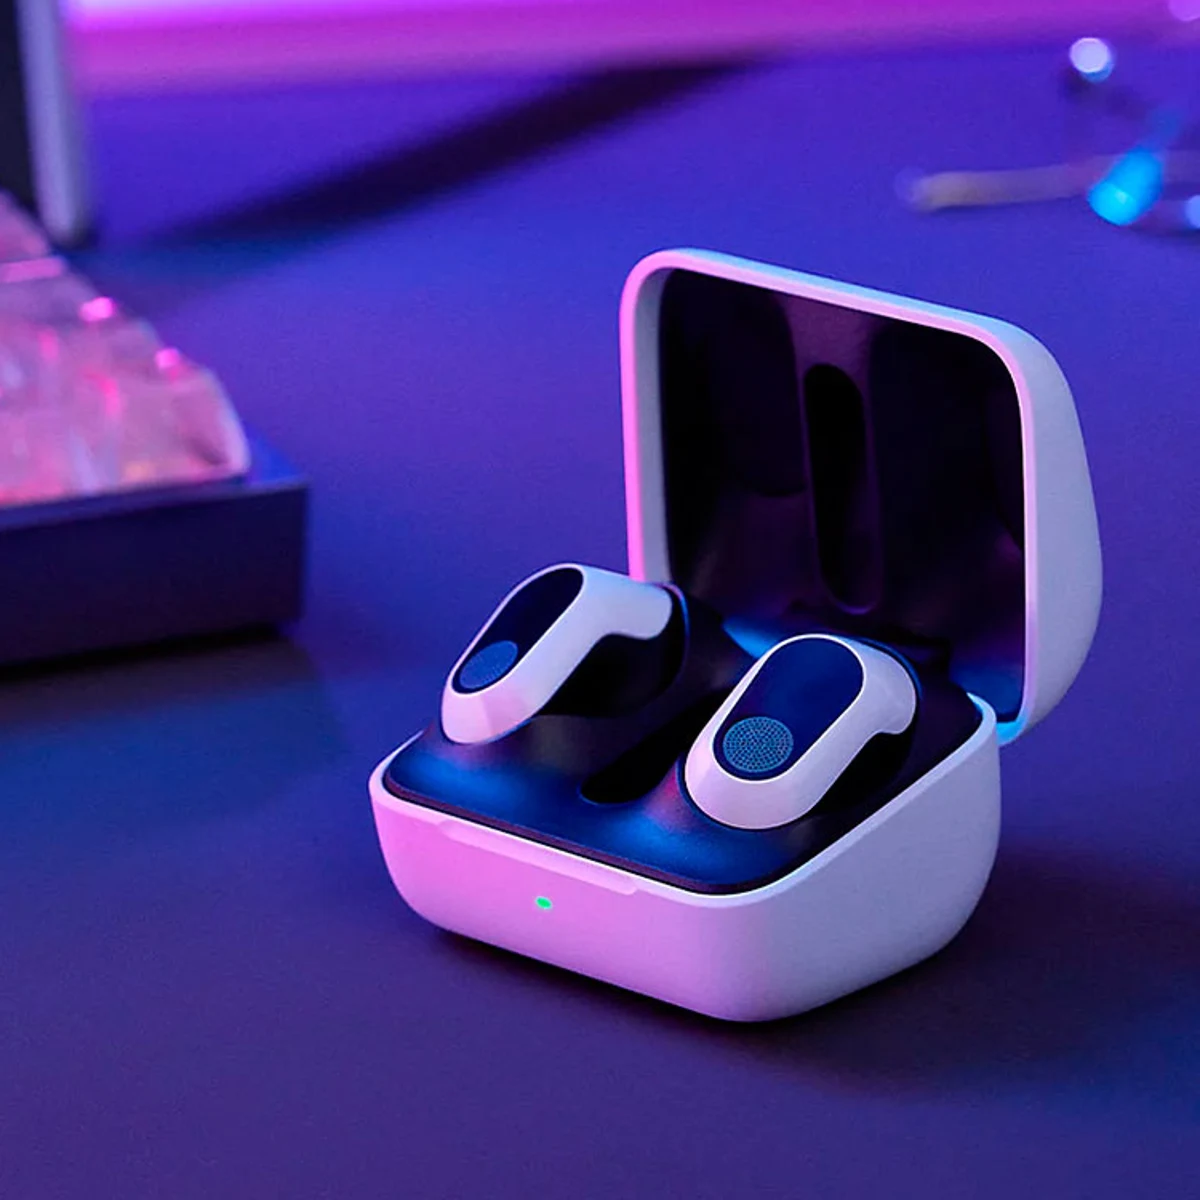 Sony lanza unos nuevos auriculares Bluetooth perfectos para jugar